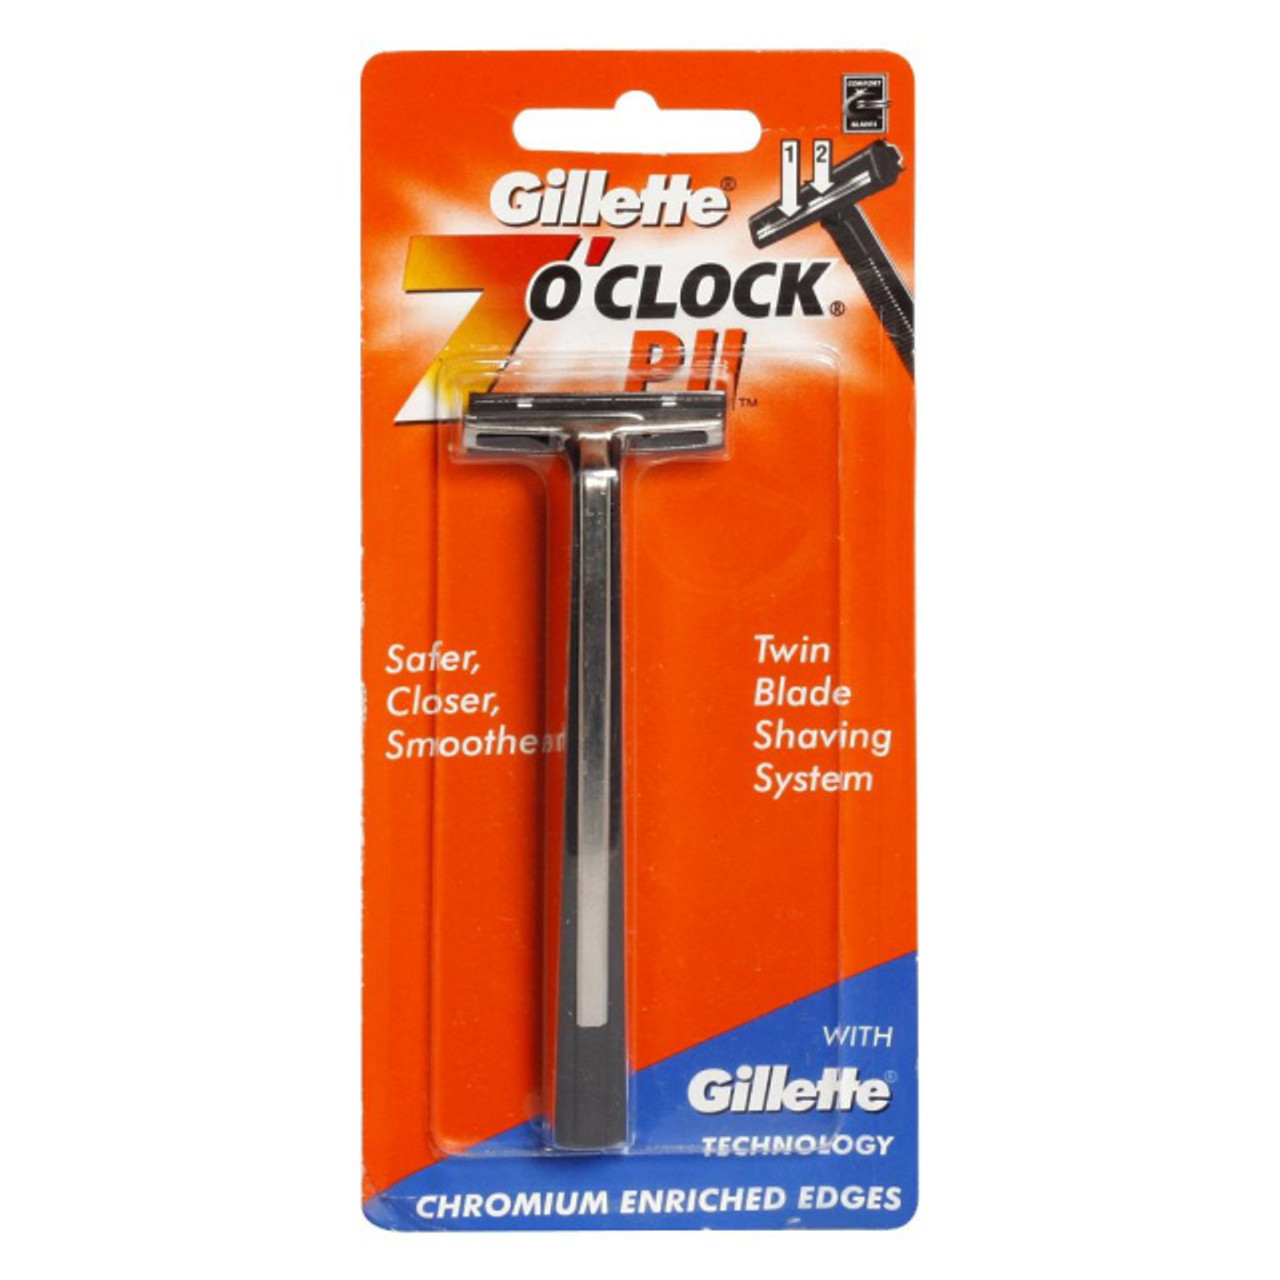 Gillette 7 O'Clock Trac II Razor - Razors Direct